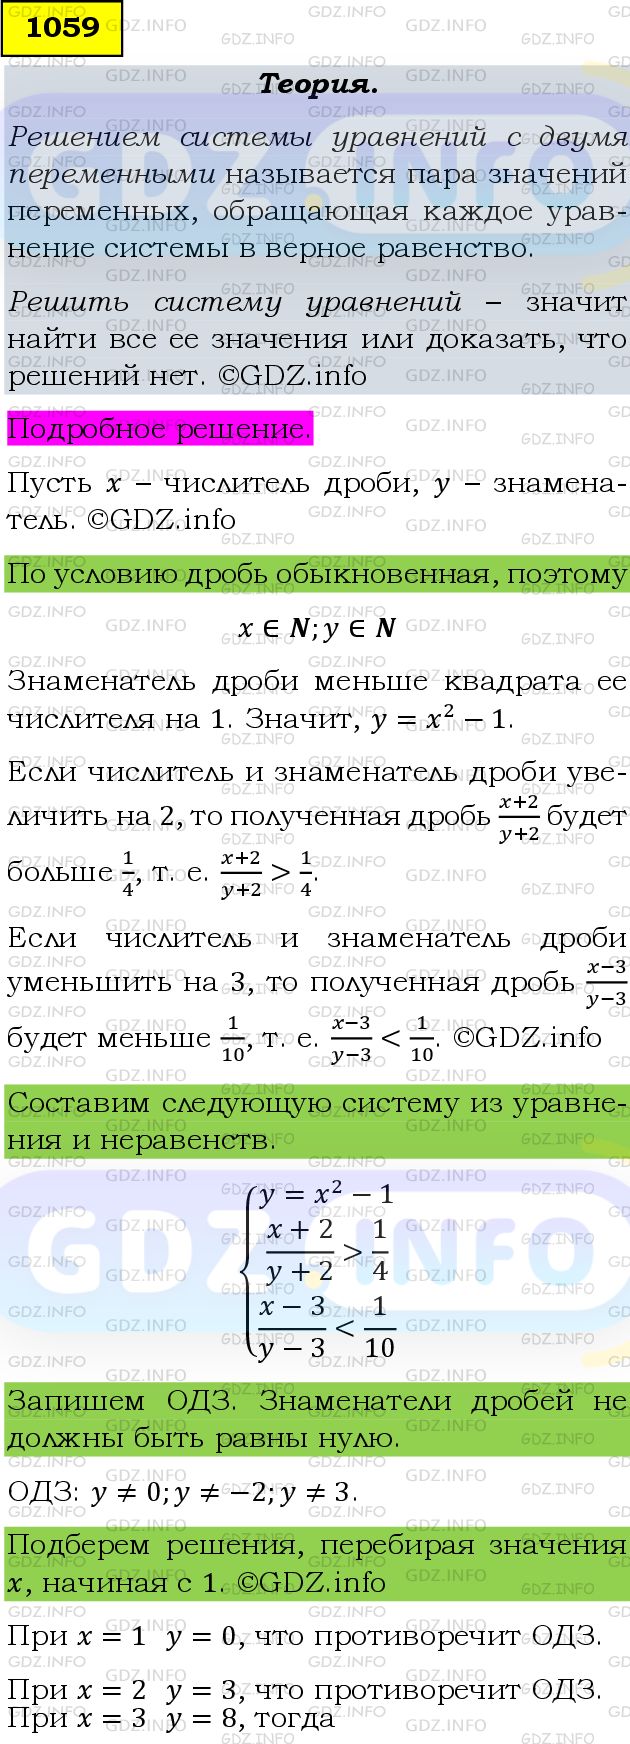 Фото подробного решения: Номер задания №1059 из ГДЗ по Алгебре 9 класс: Макарычев Ю.Н.